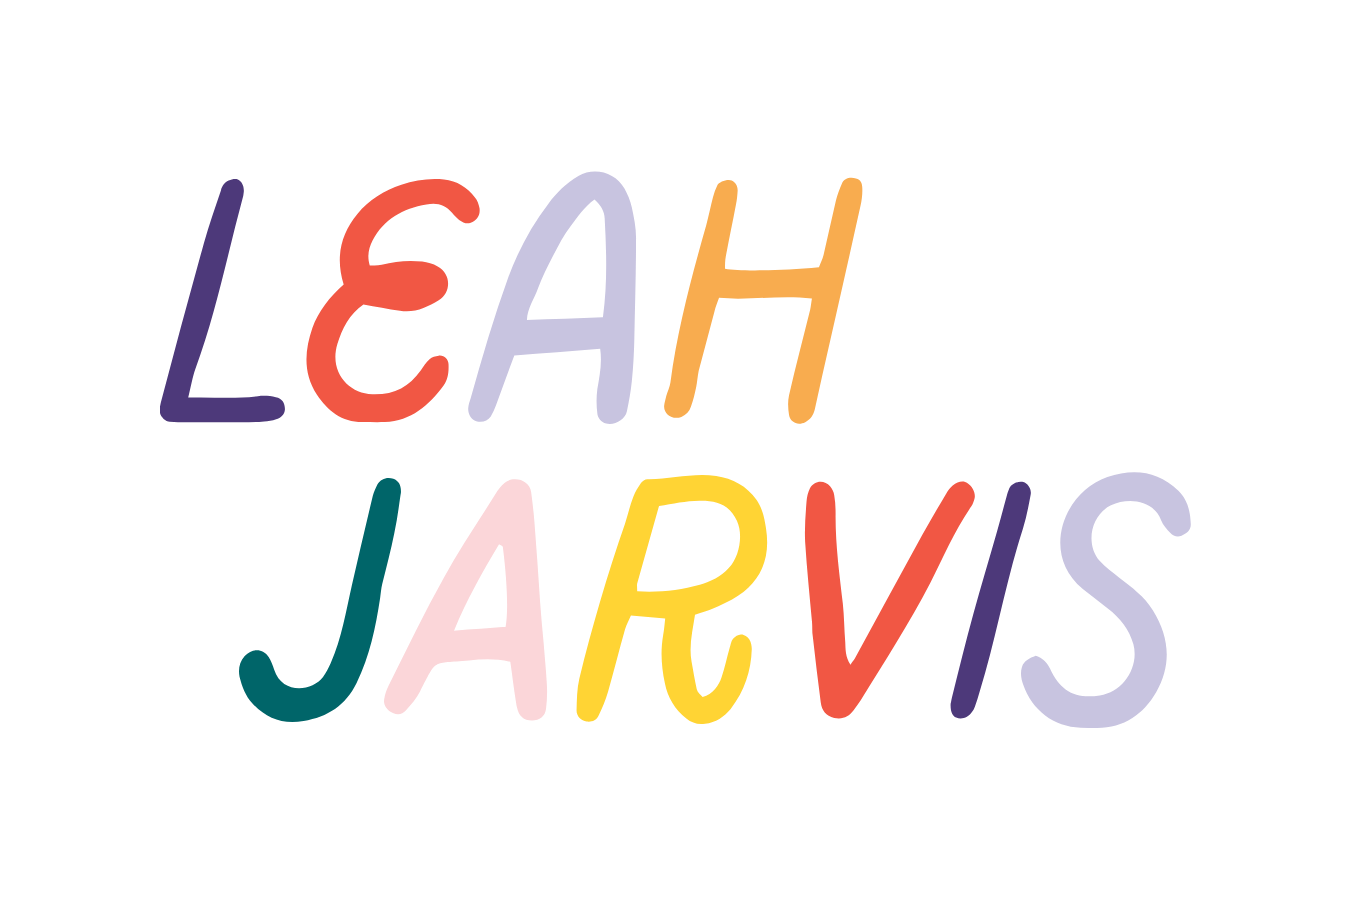 Leah Jarvis